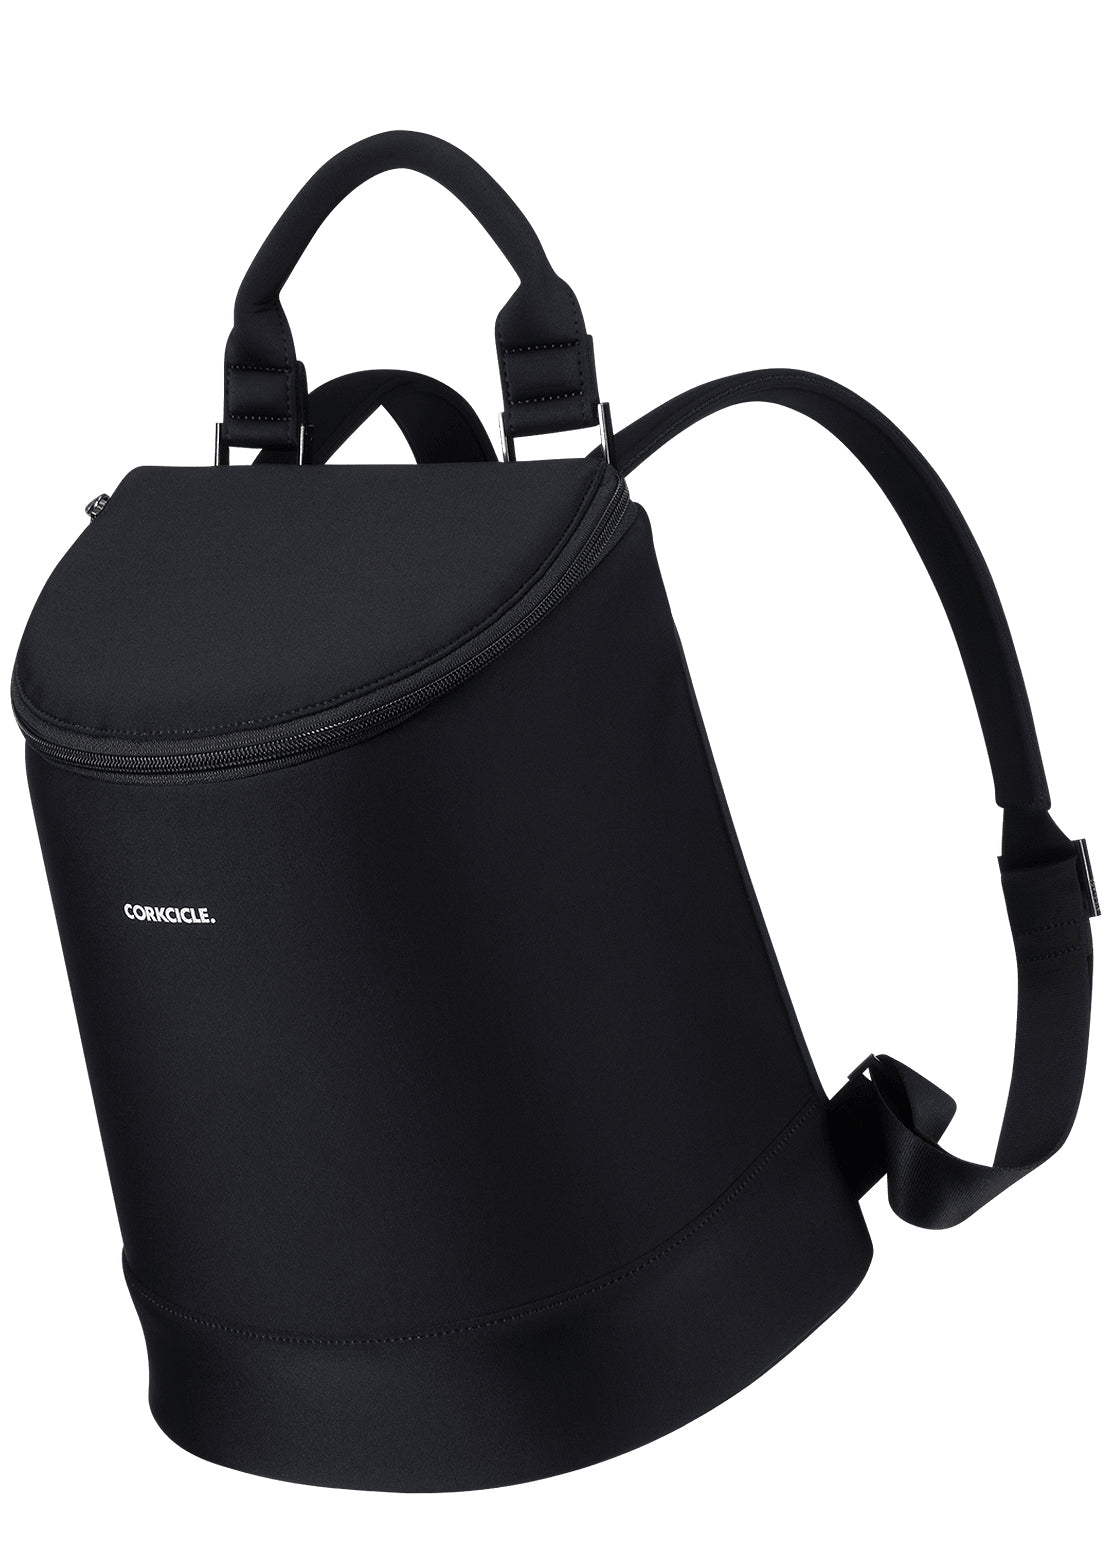 Corkcicle Eola Bucket Backpack Cooler Black